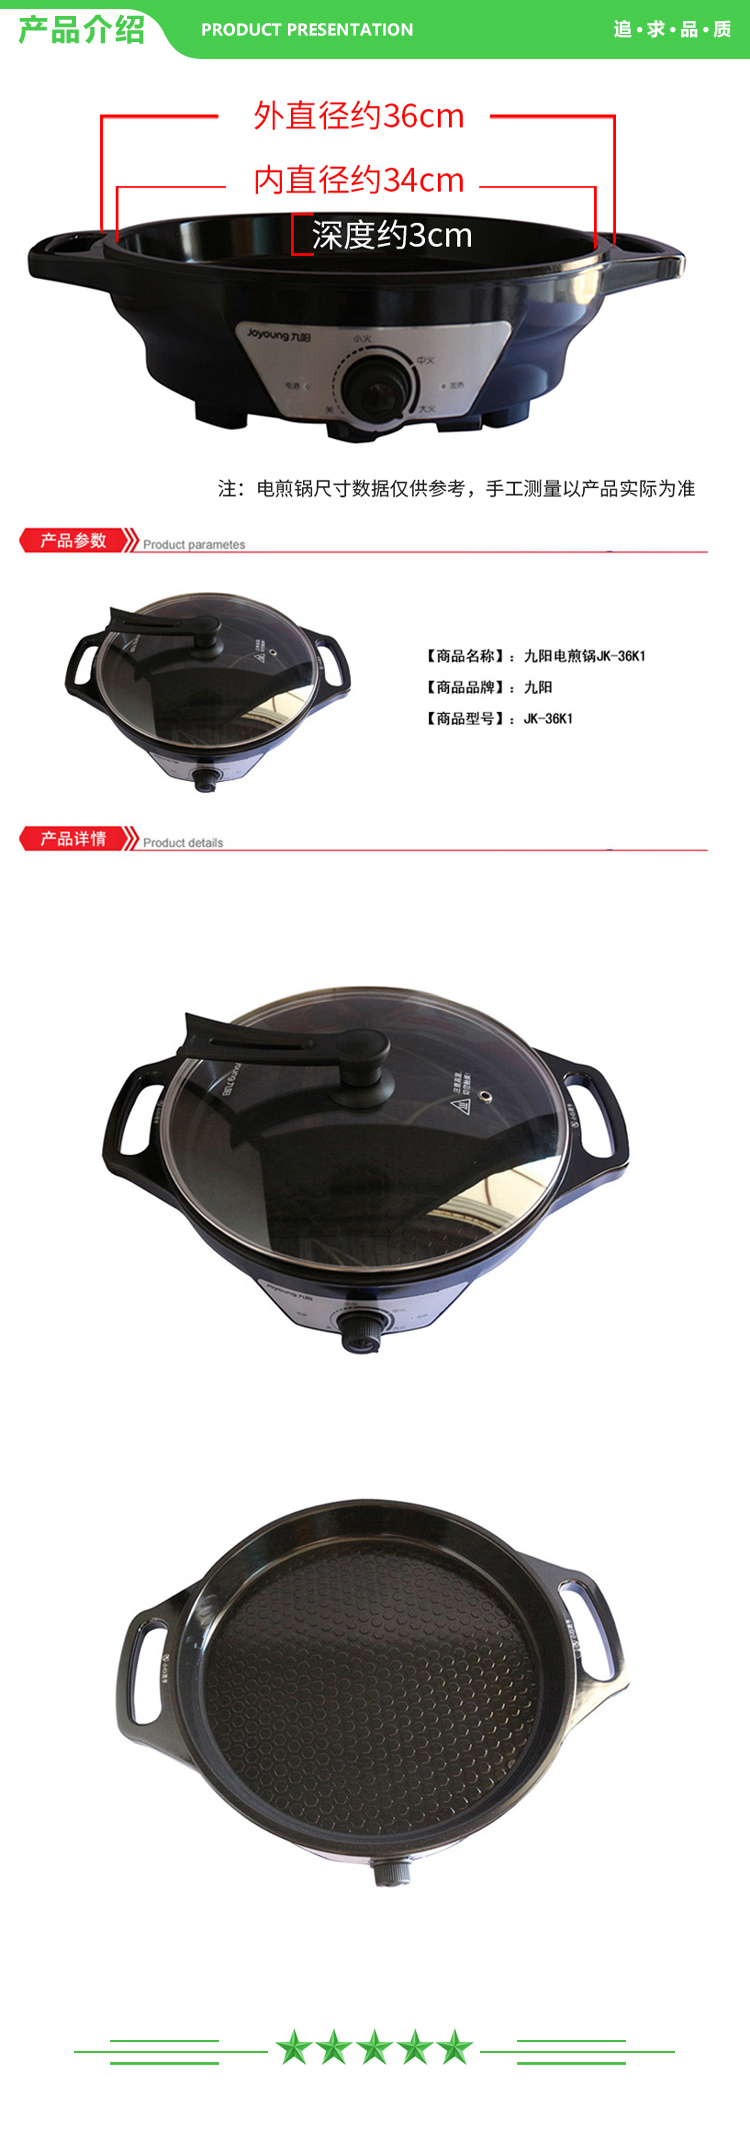 九阳 Joyoung JK-36K1 电饼铛 直径36CM锅深42MM家用多功能煎烤机多档调节电煎锅.jpg